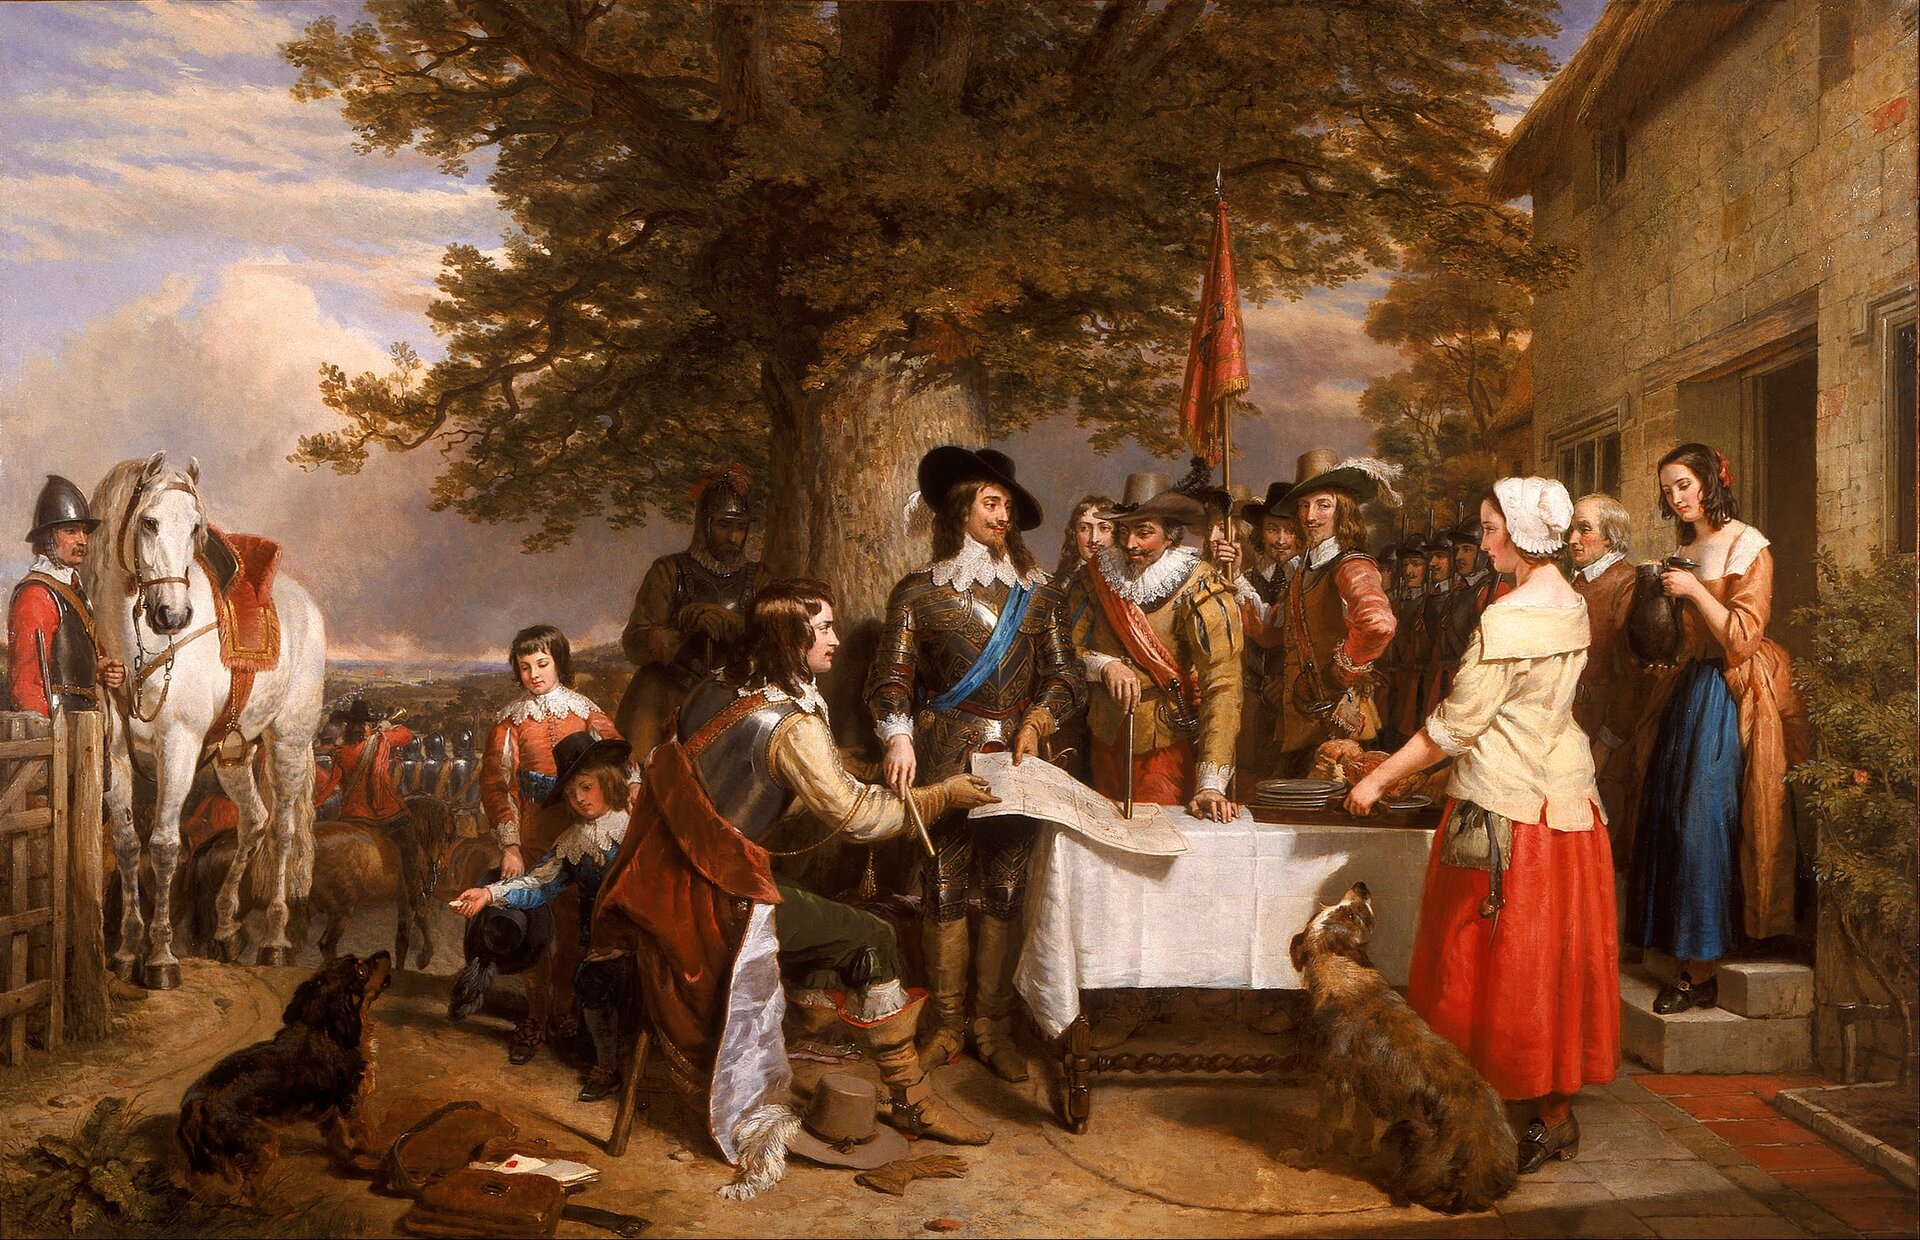 Karol I Karol I podczas pierwszej bitwy po ucieczce króla z Londynu, starcie to rozpoczynało angielską wojnę domową. Źródło: Charles Landseer, Karol I, 1845, olej na płótnie, domena publiczna.